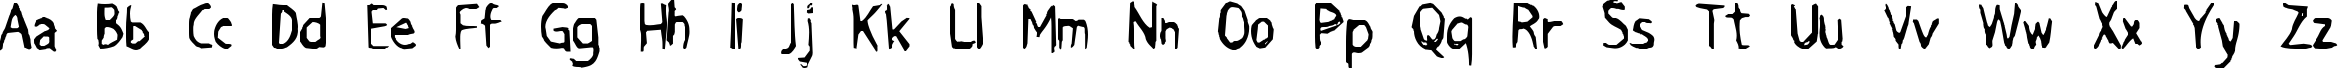 Пример написания английского алфавита шрифтом Grimace